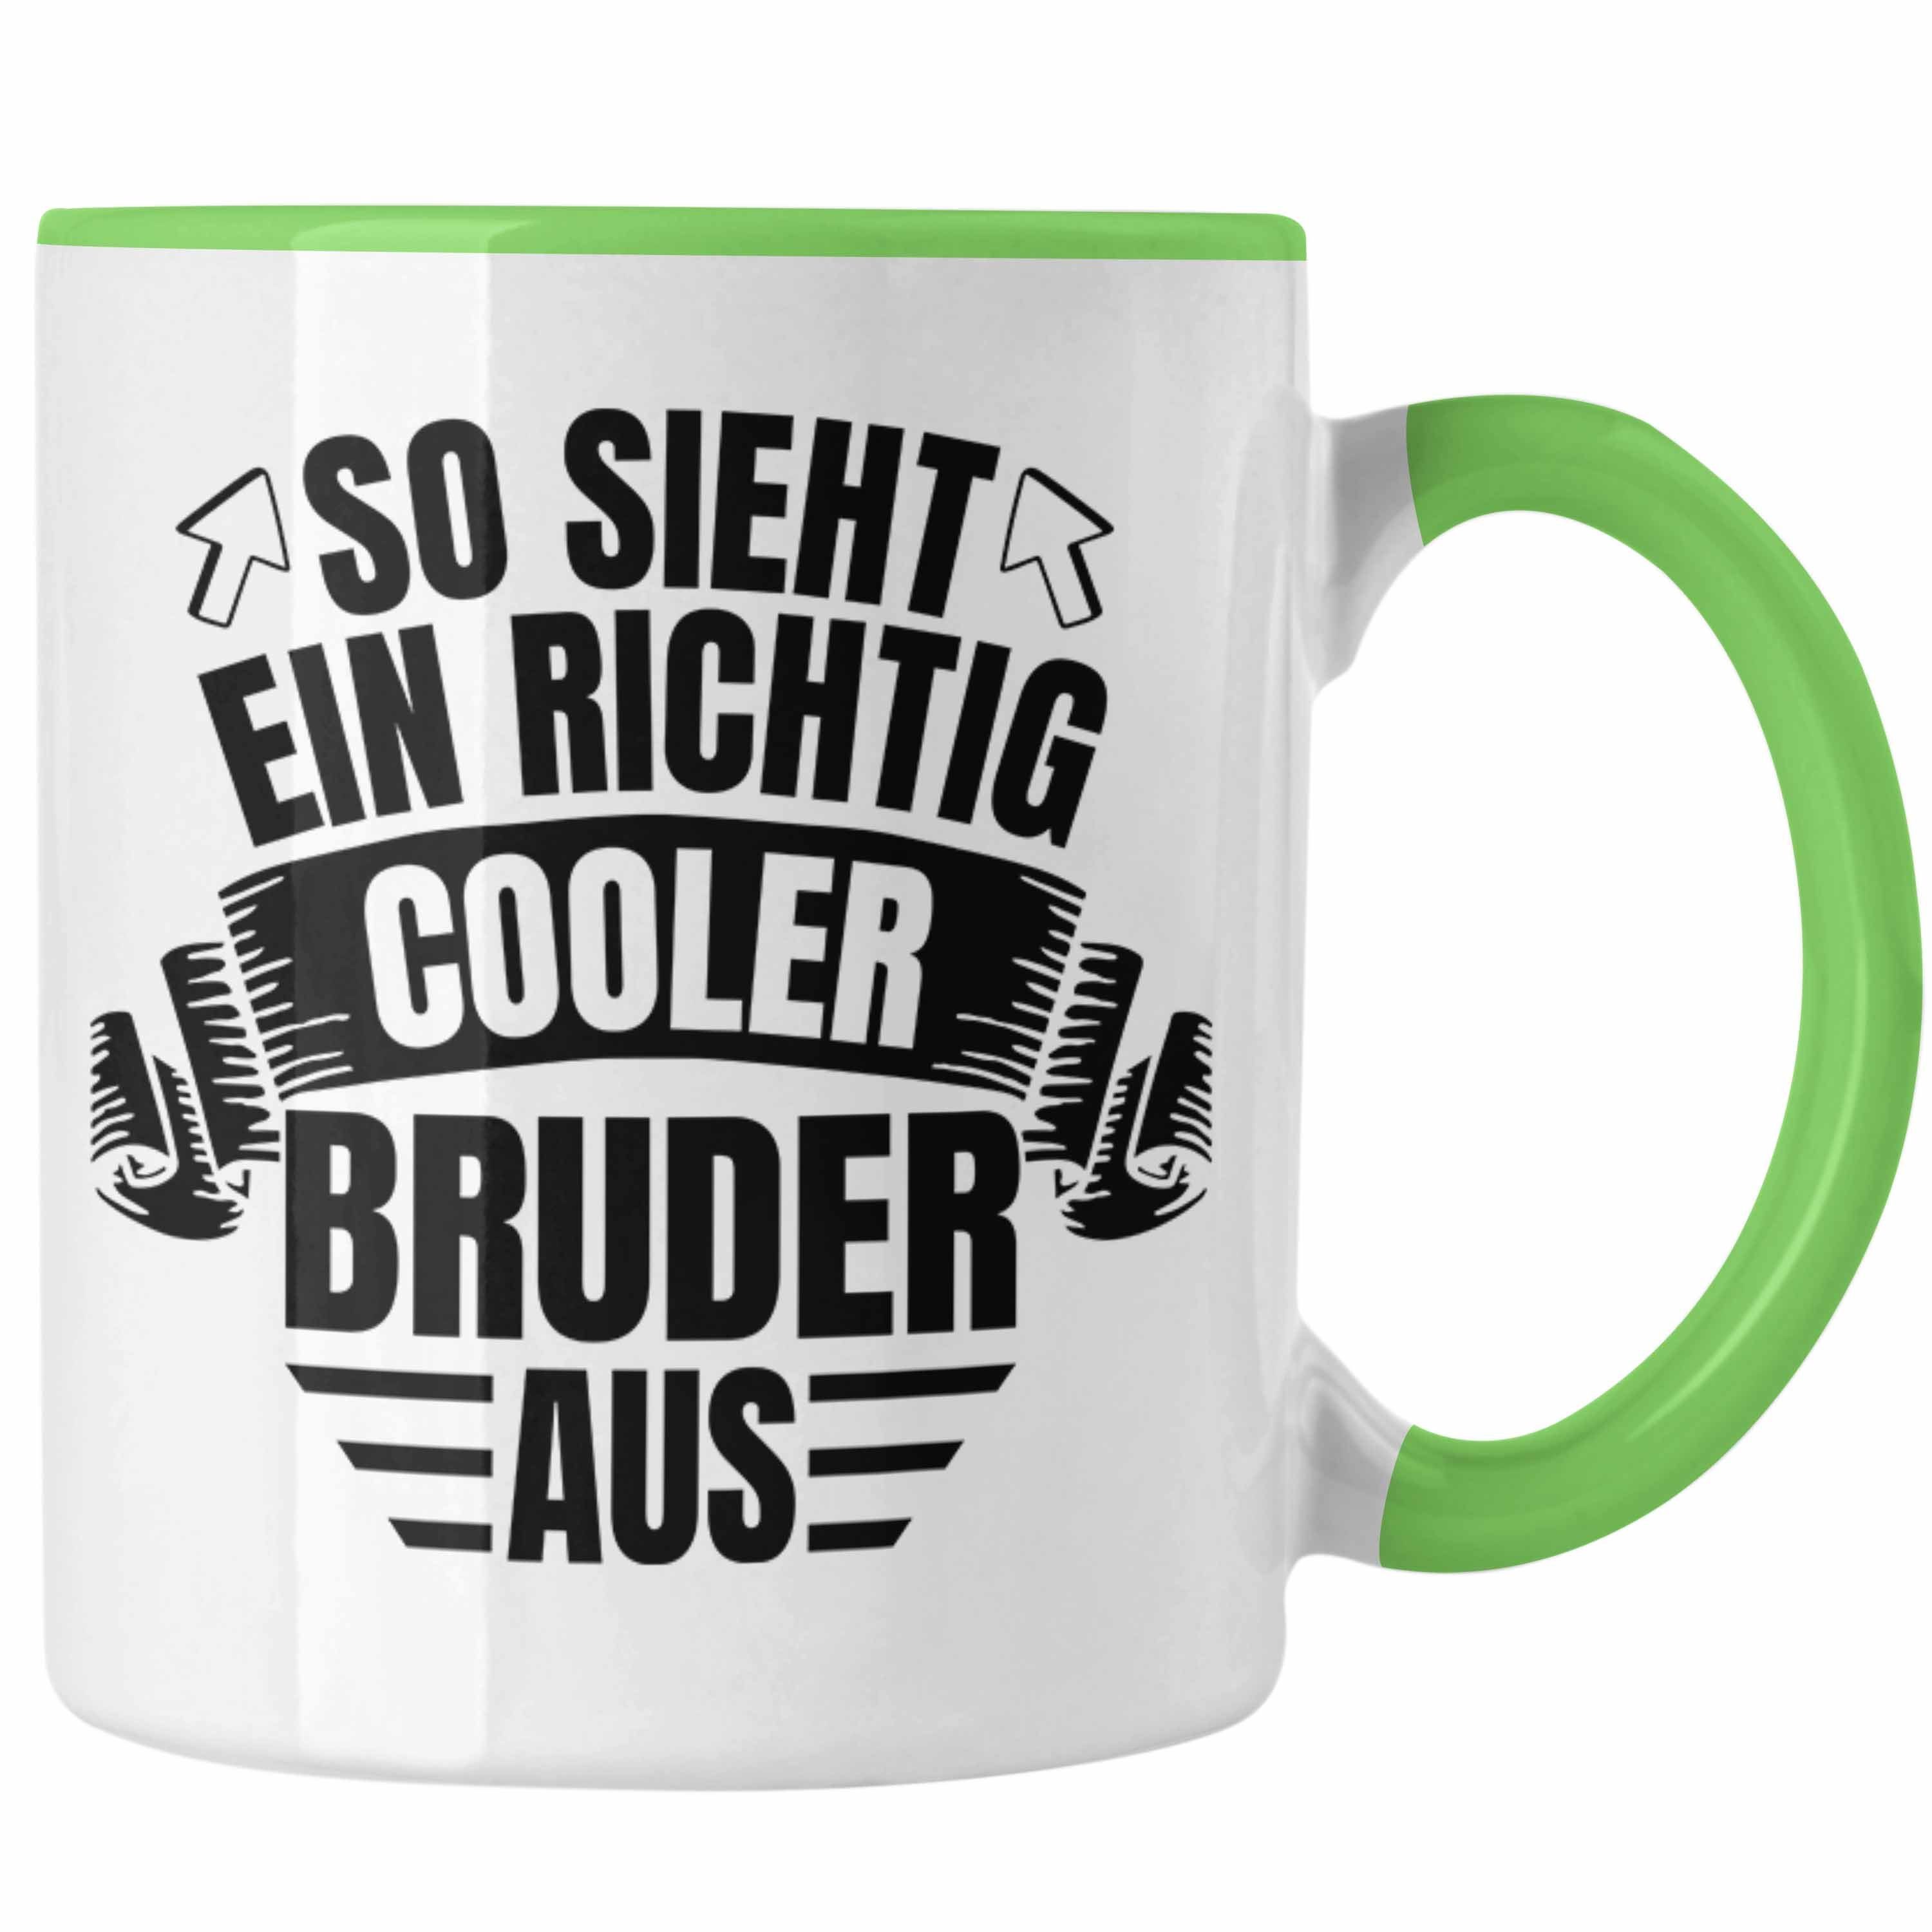 Bester Trendation Bruder Bruder - Richtig Tasse Aus Trendation Der Welt Geschenkidee Ein Tasse So Cooler Grün Geschenk Sieht Geburtstag